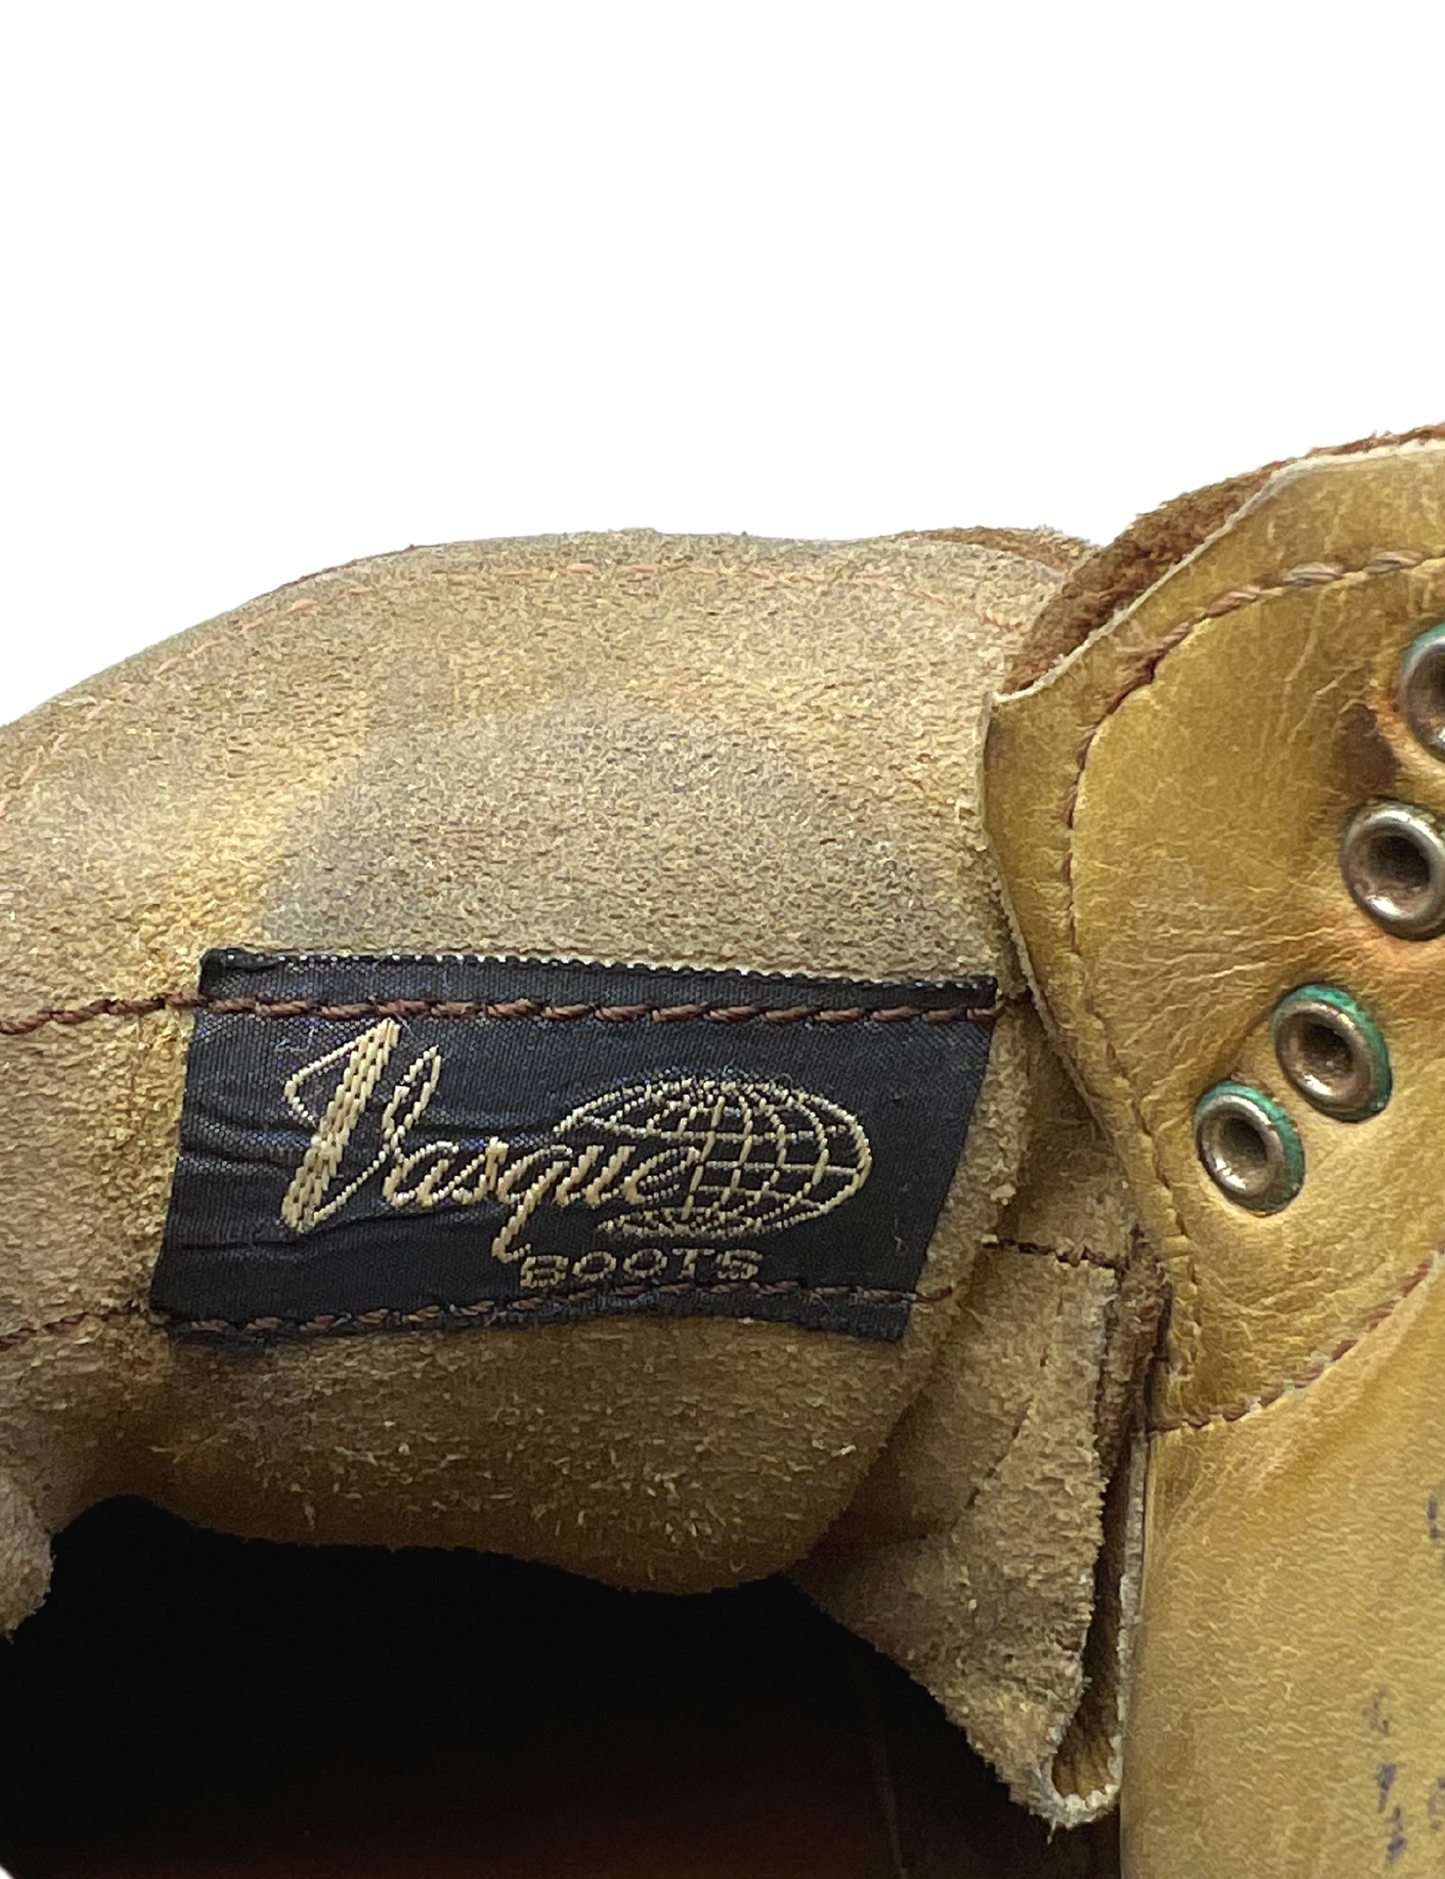 70’s Vasque Hiking Vibram Sole Italian Split Cowhide Leather Laceup Boots Wms Size 7M